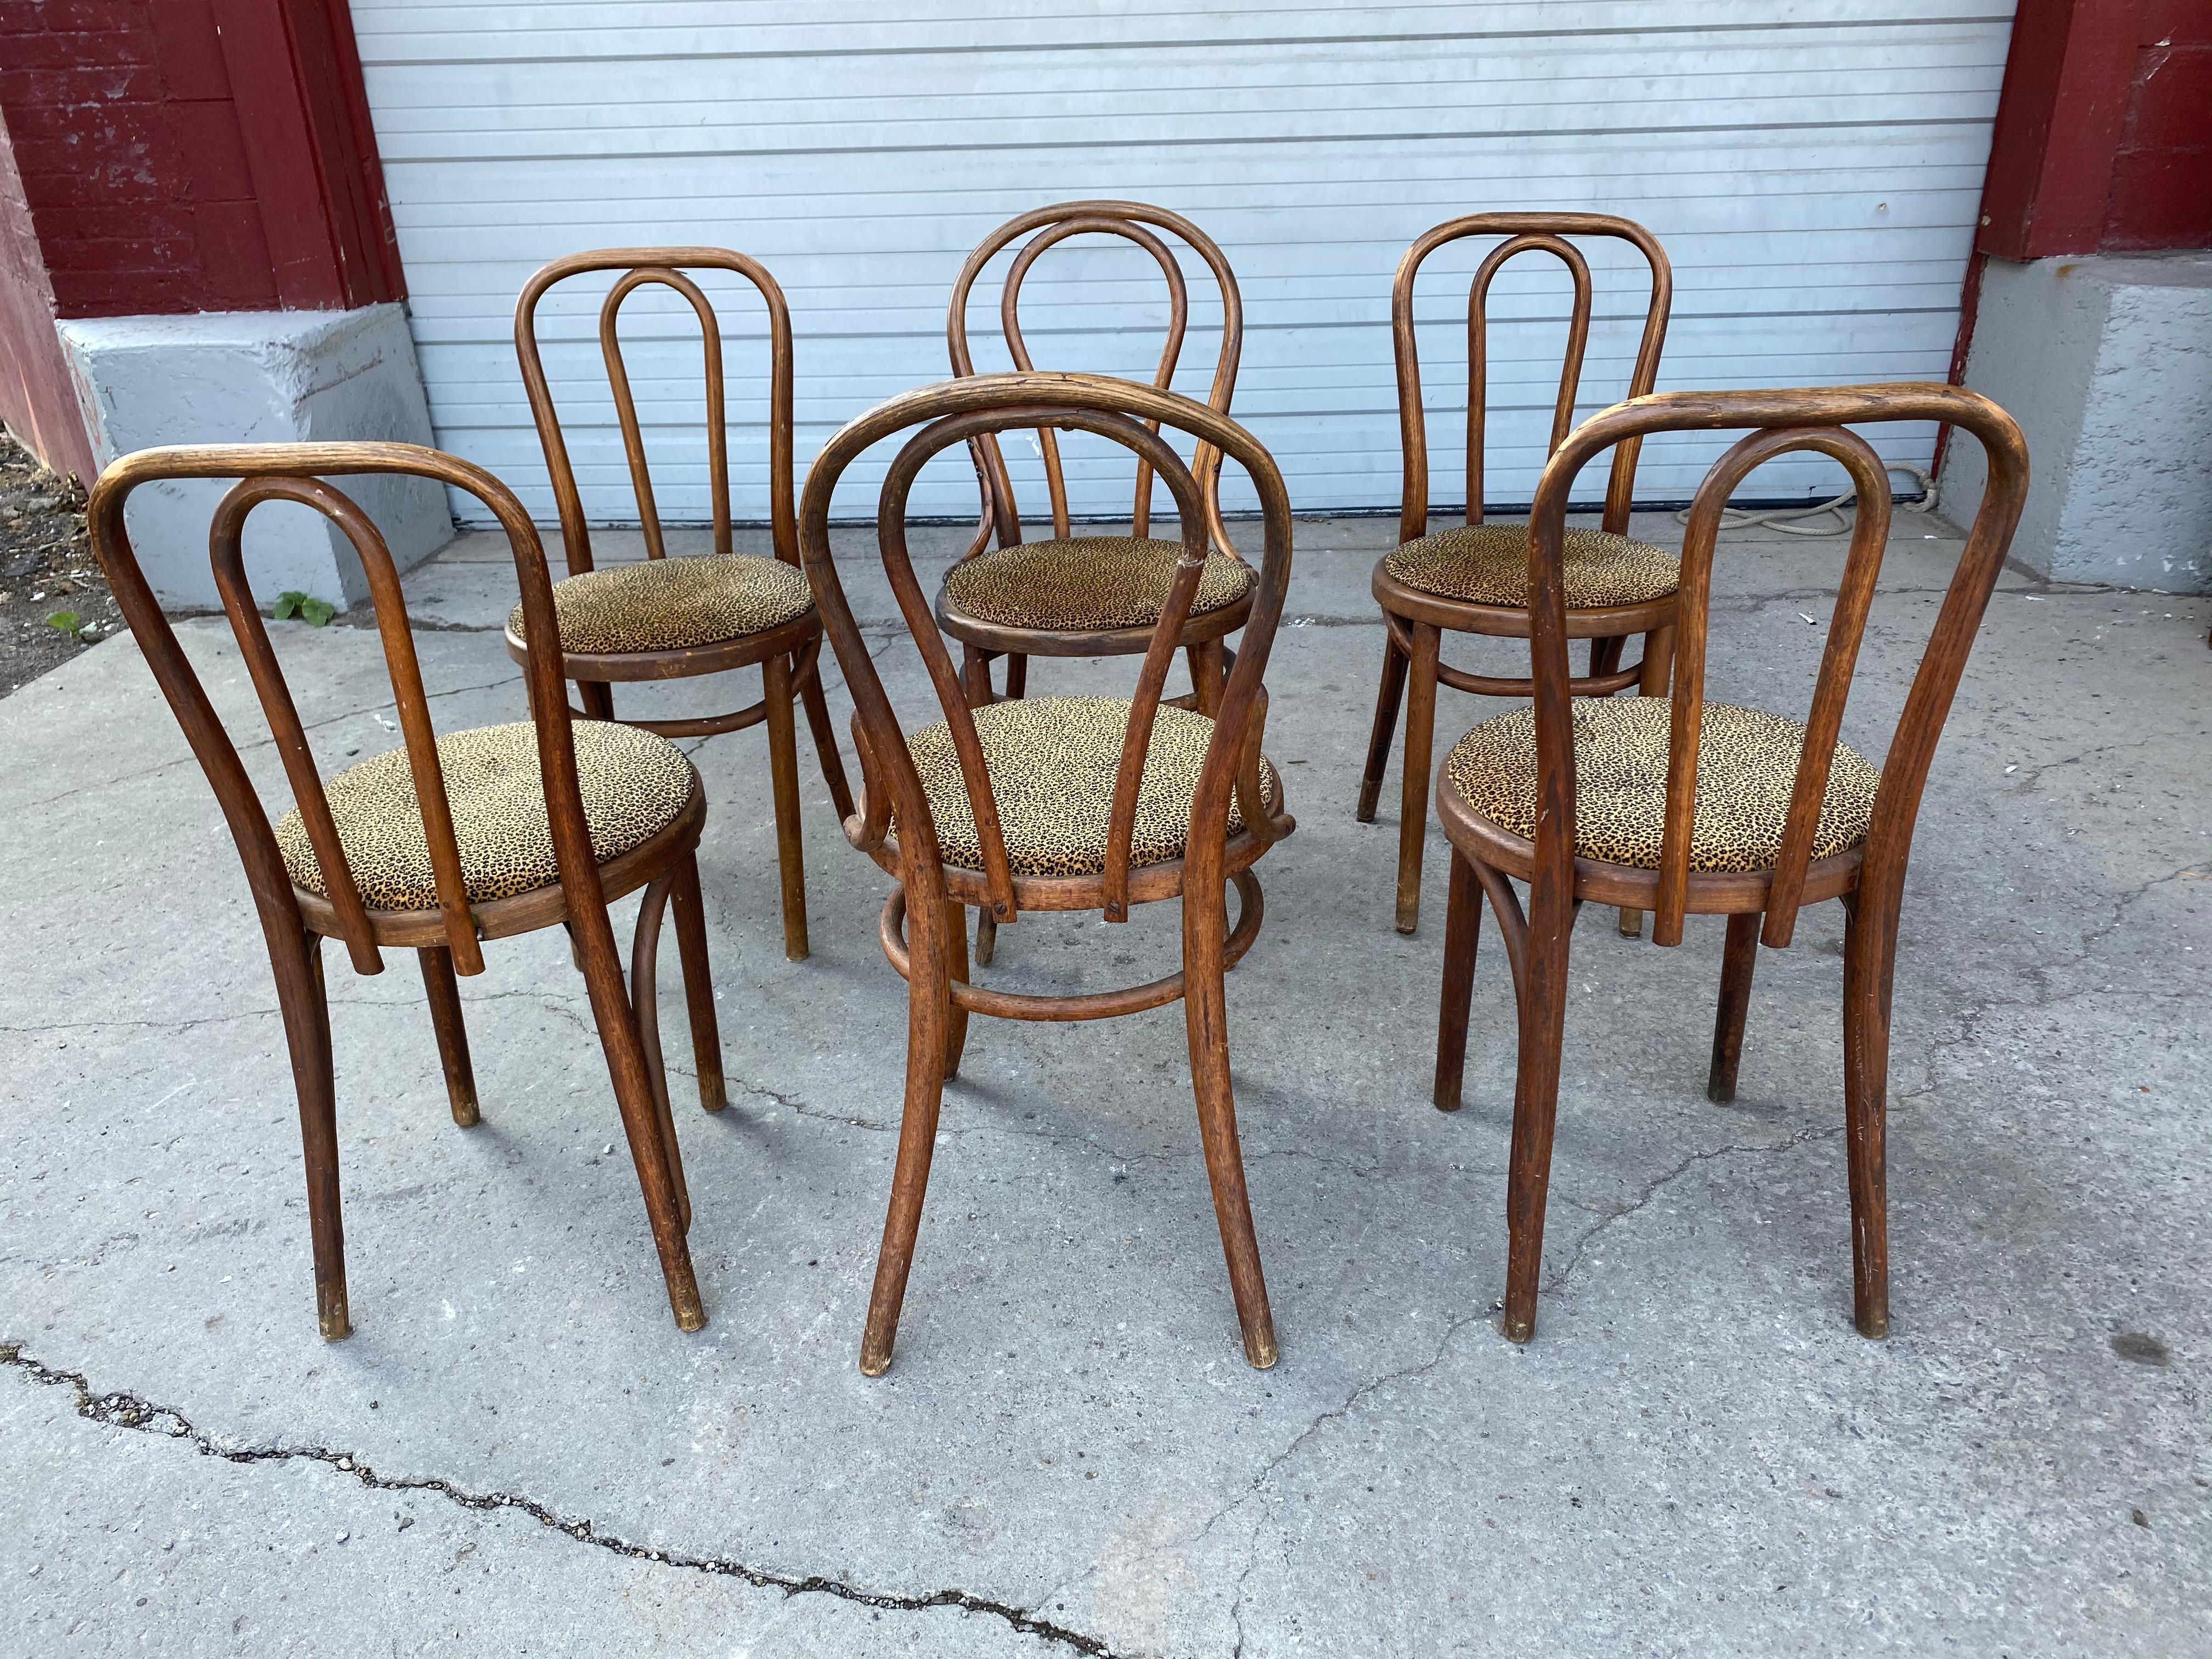 Ensemble classique de 6 chaises de salle à manger en bois courbé attribuées à Thonet, récemment retapissées dans un tissu imprimé léopard, l'ensemble se compose de 4 chaises assorties et de deux chaises au design légèrement différent (voir photo).